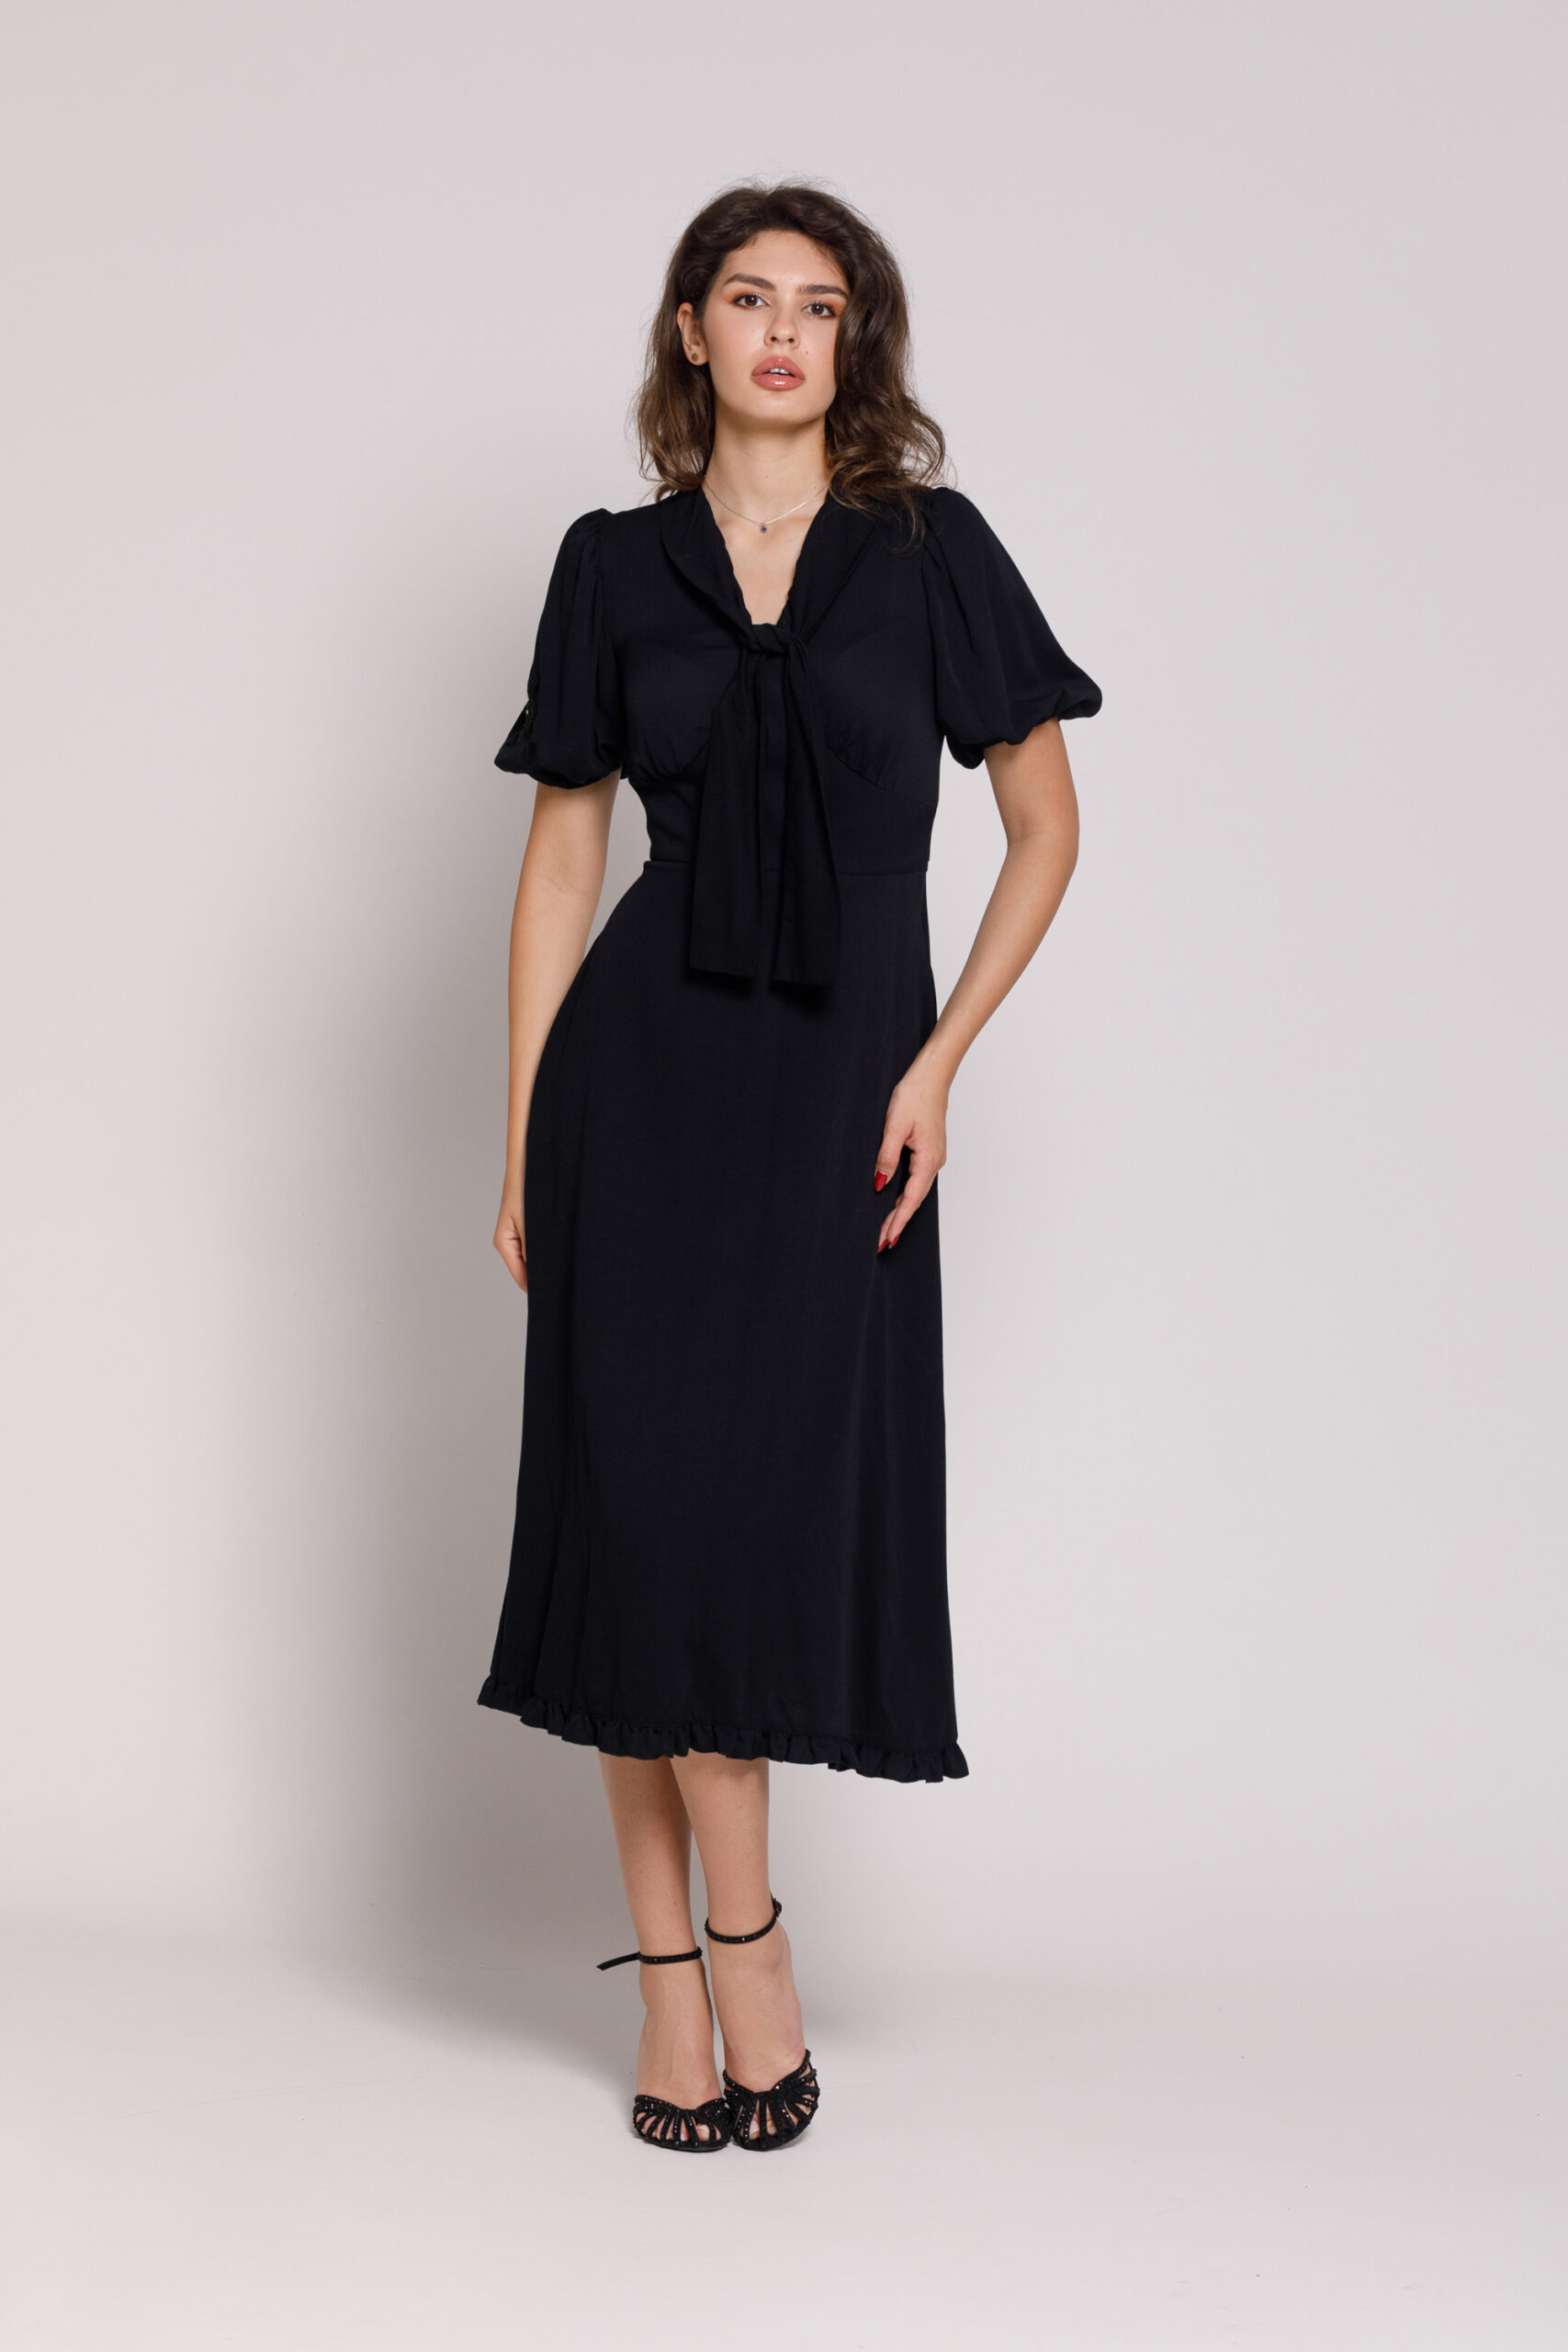 NOLA Casual black viscose dress. Natural fabrics, original design, handmade embroidery